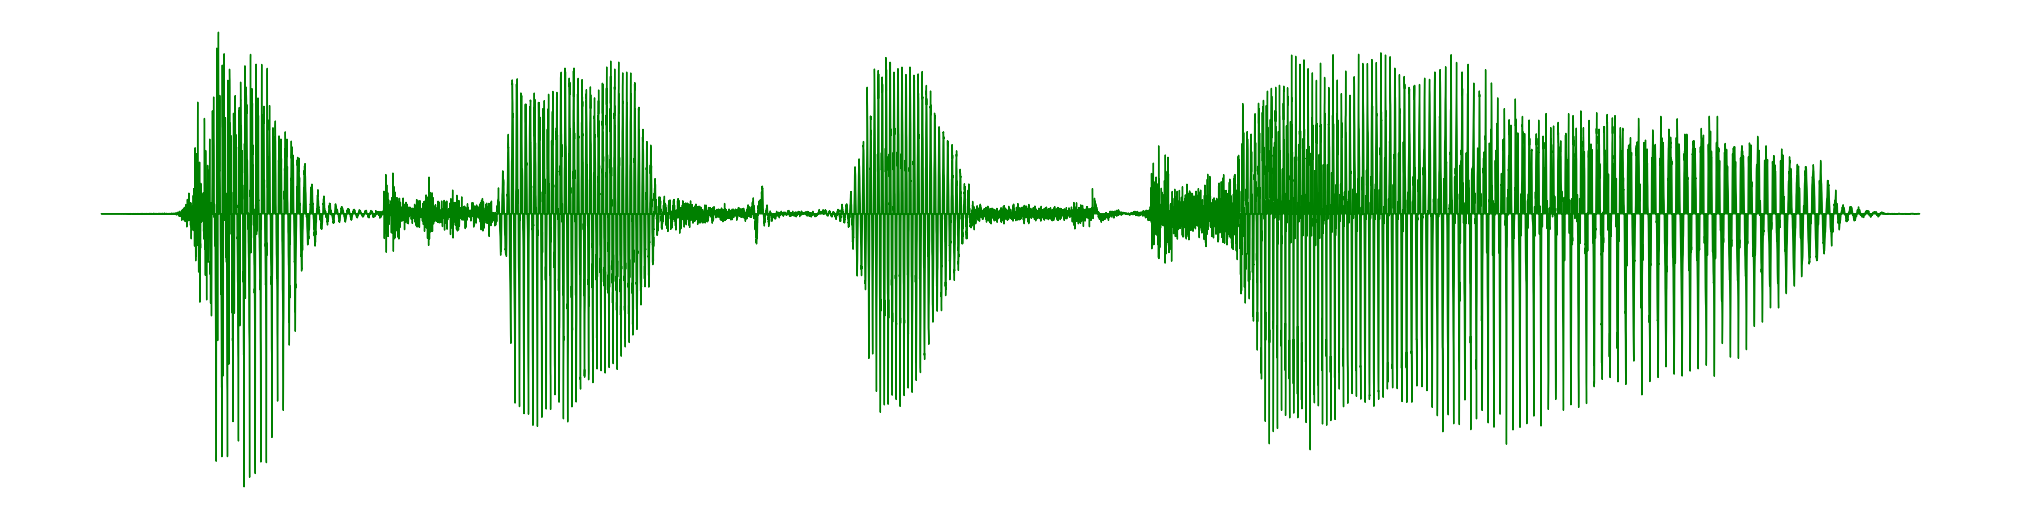 Python 3.7 音频文件生成波形图